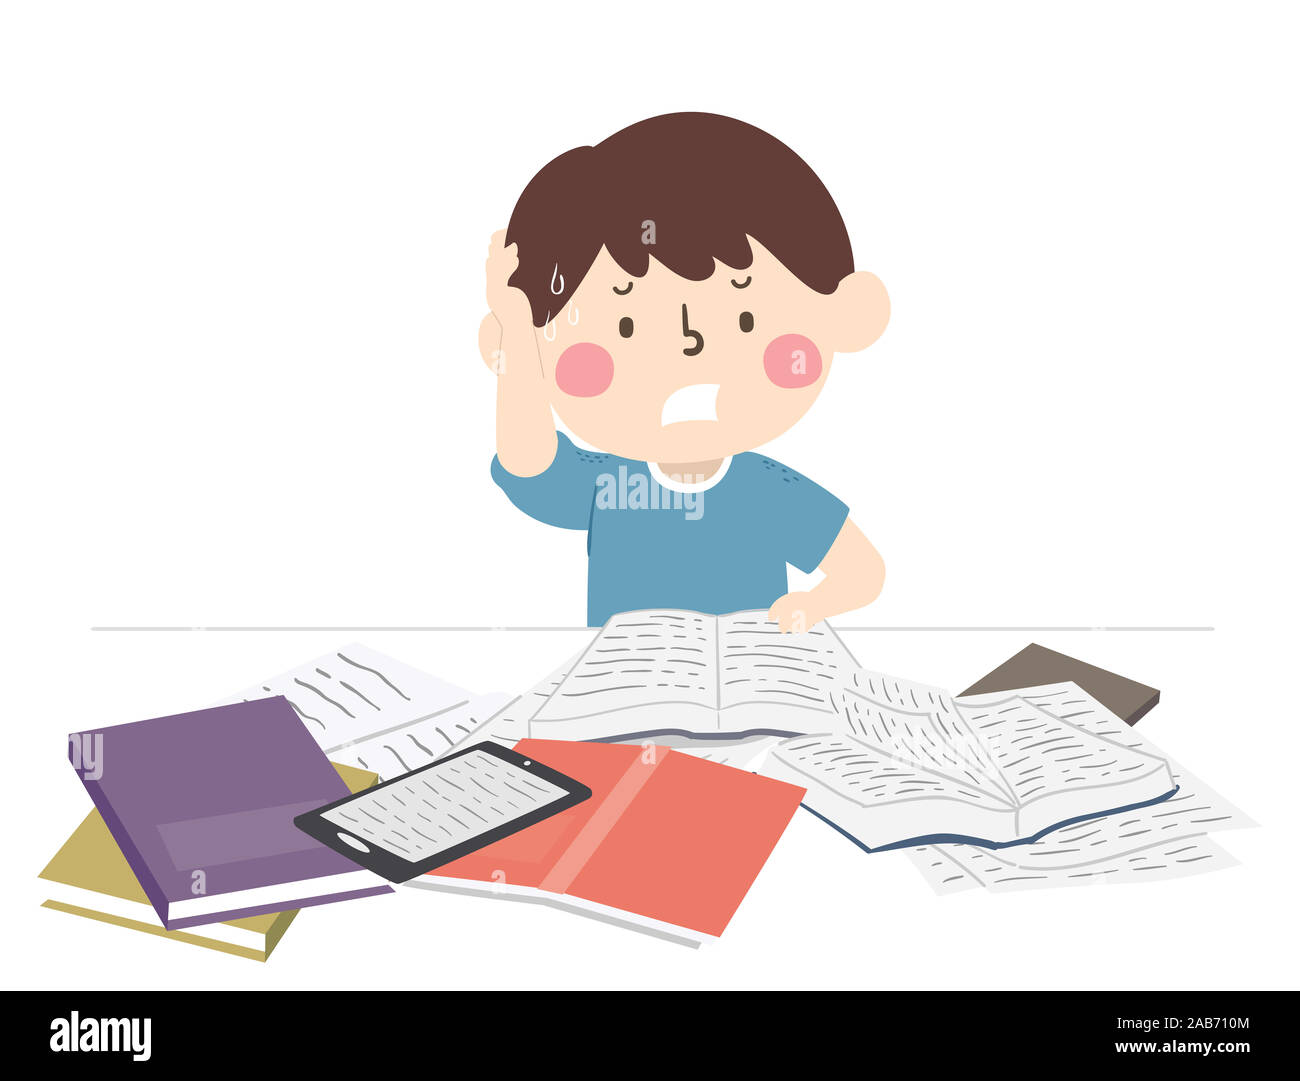 Abbildung: ein Kind Junge seinen Kopf kratzen und Pauken zu Studieren für Prüfung, mit offenen Büchern und Tablet auf seinem Tisch Stockfoto